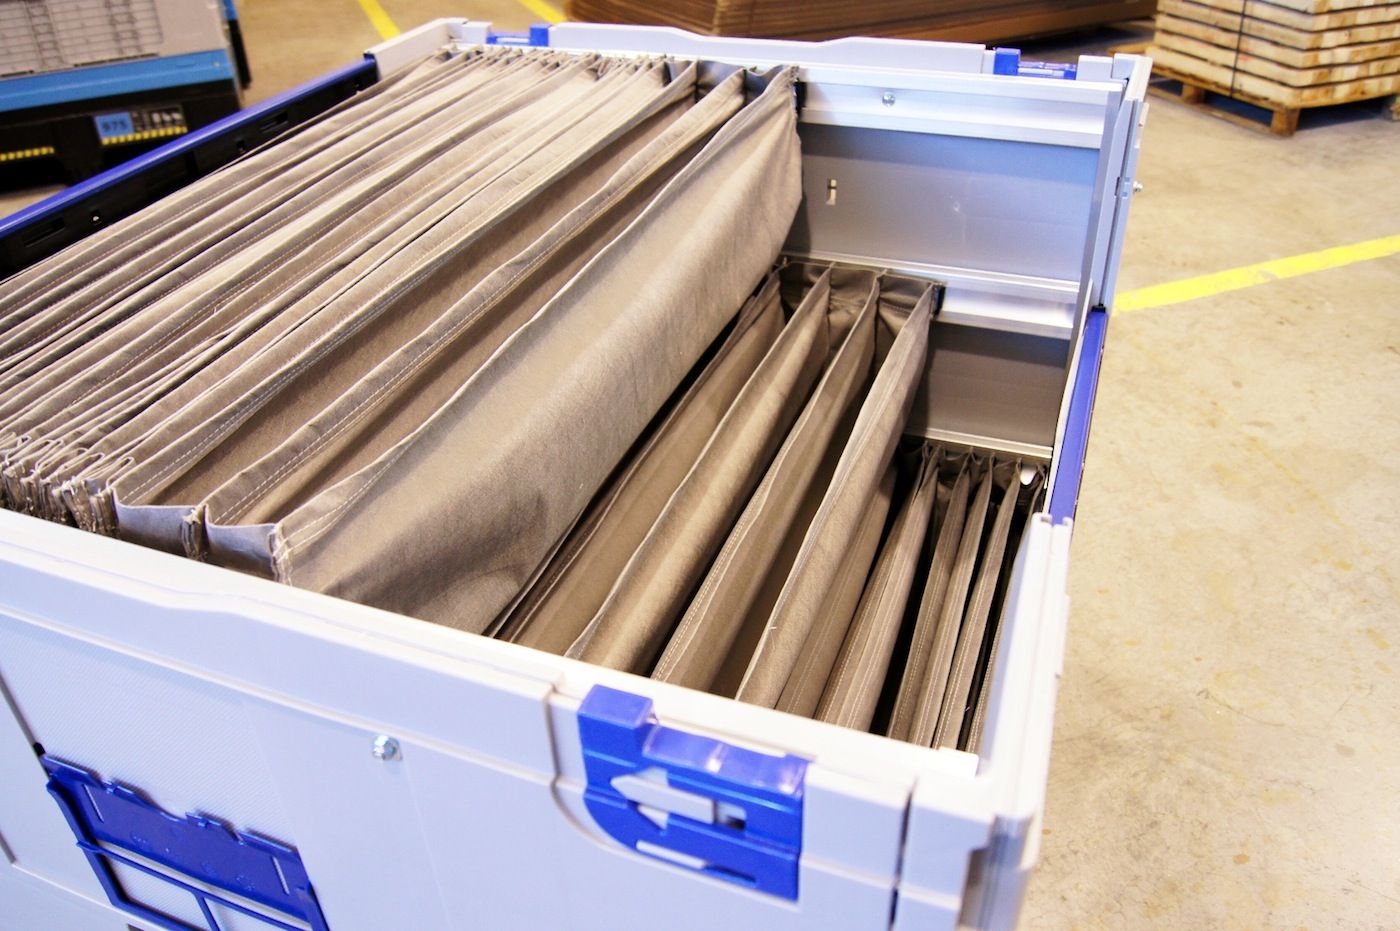 Nuevas guías de aluminio para los contenedores reutilizables de Tecnicartón